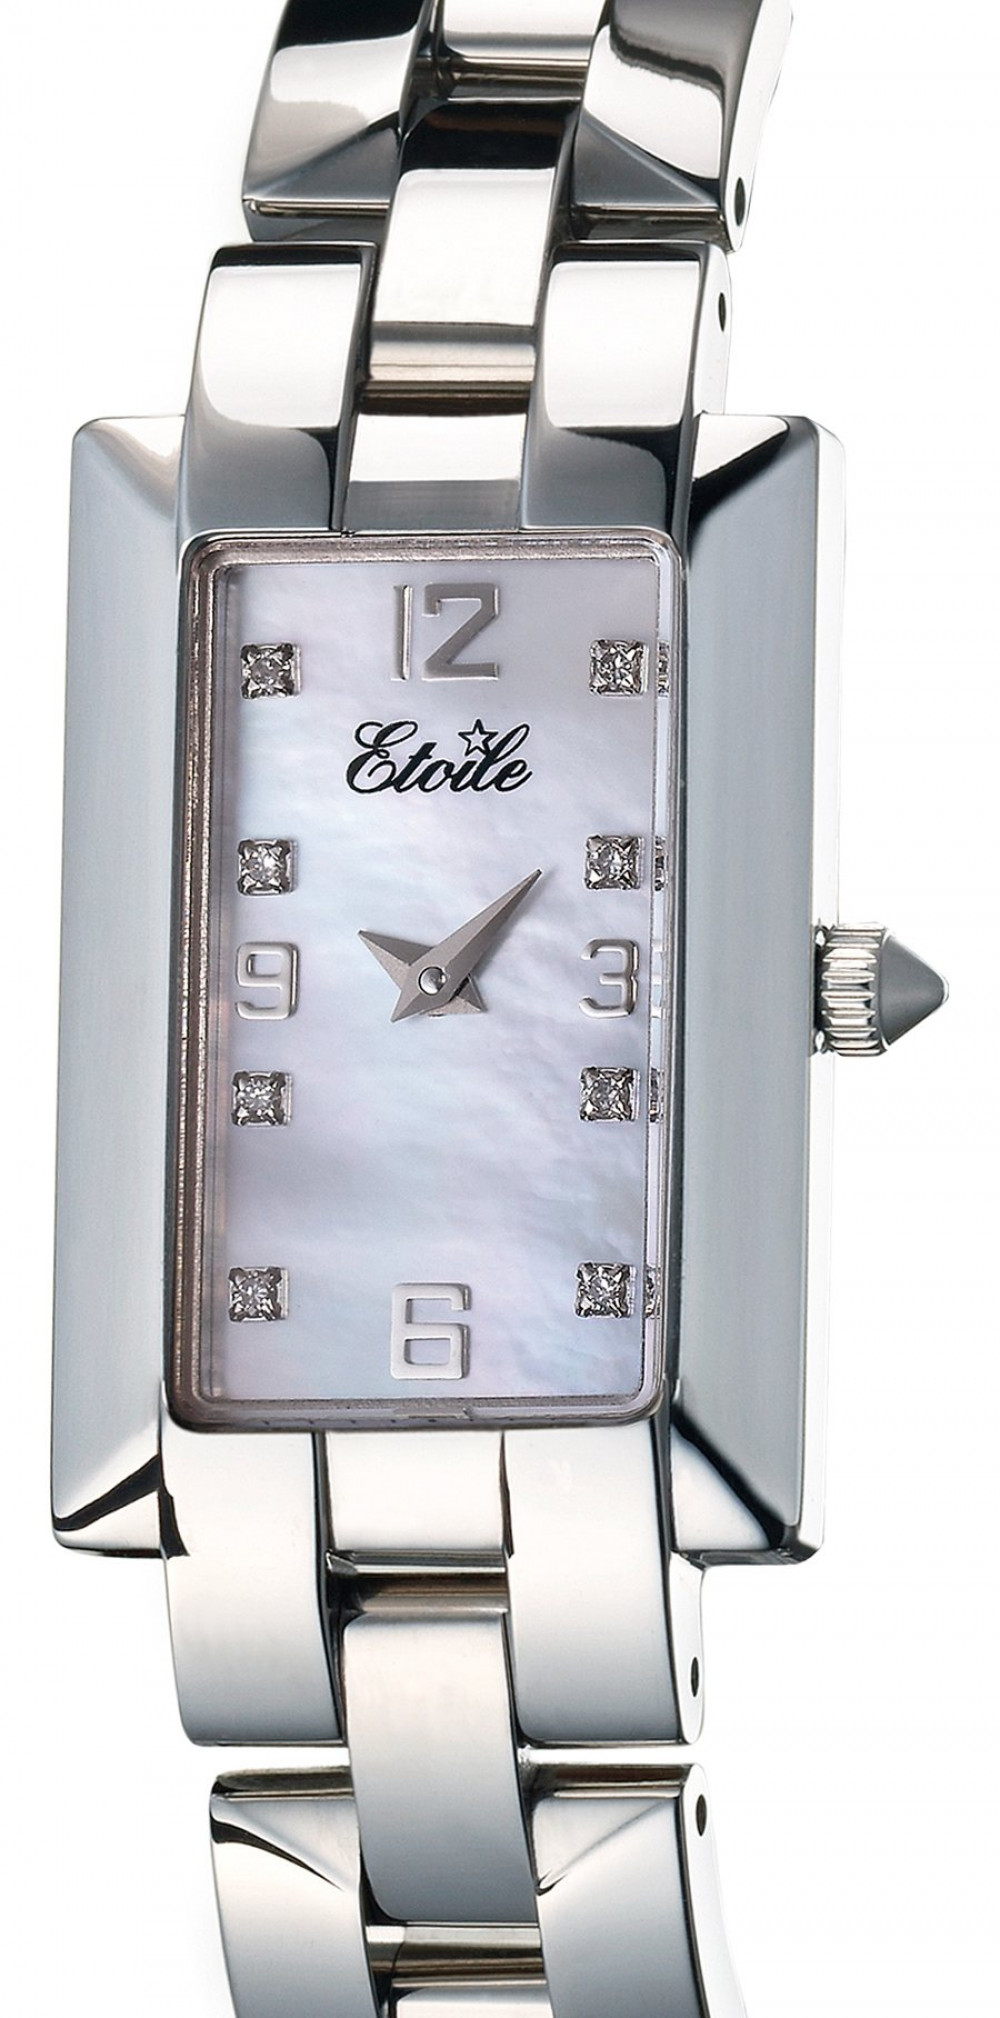 Zegarek firmy Etoile, model Diva